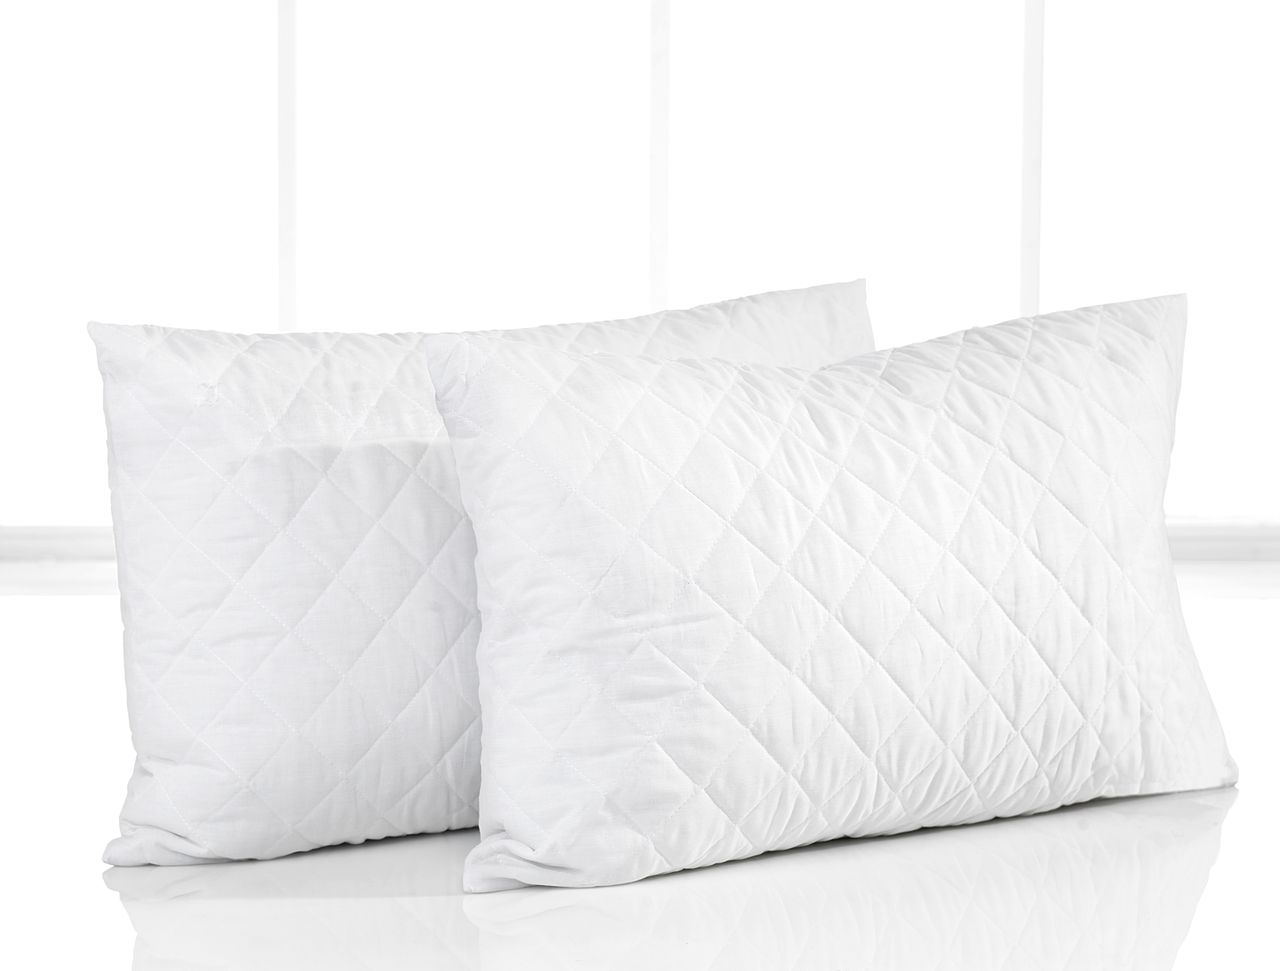 Sleeping protège-oreiller Coton set de 2